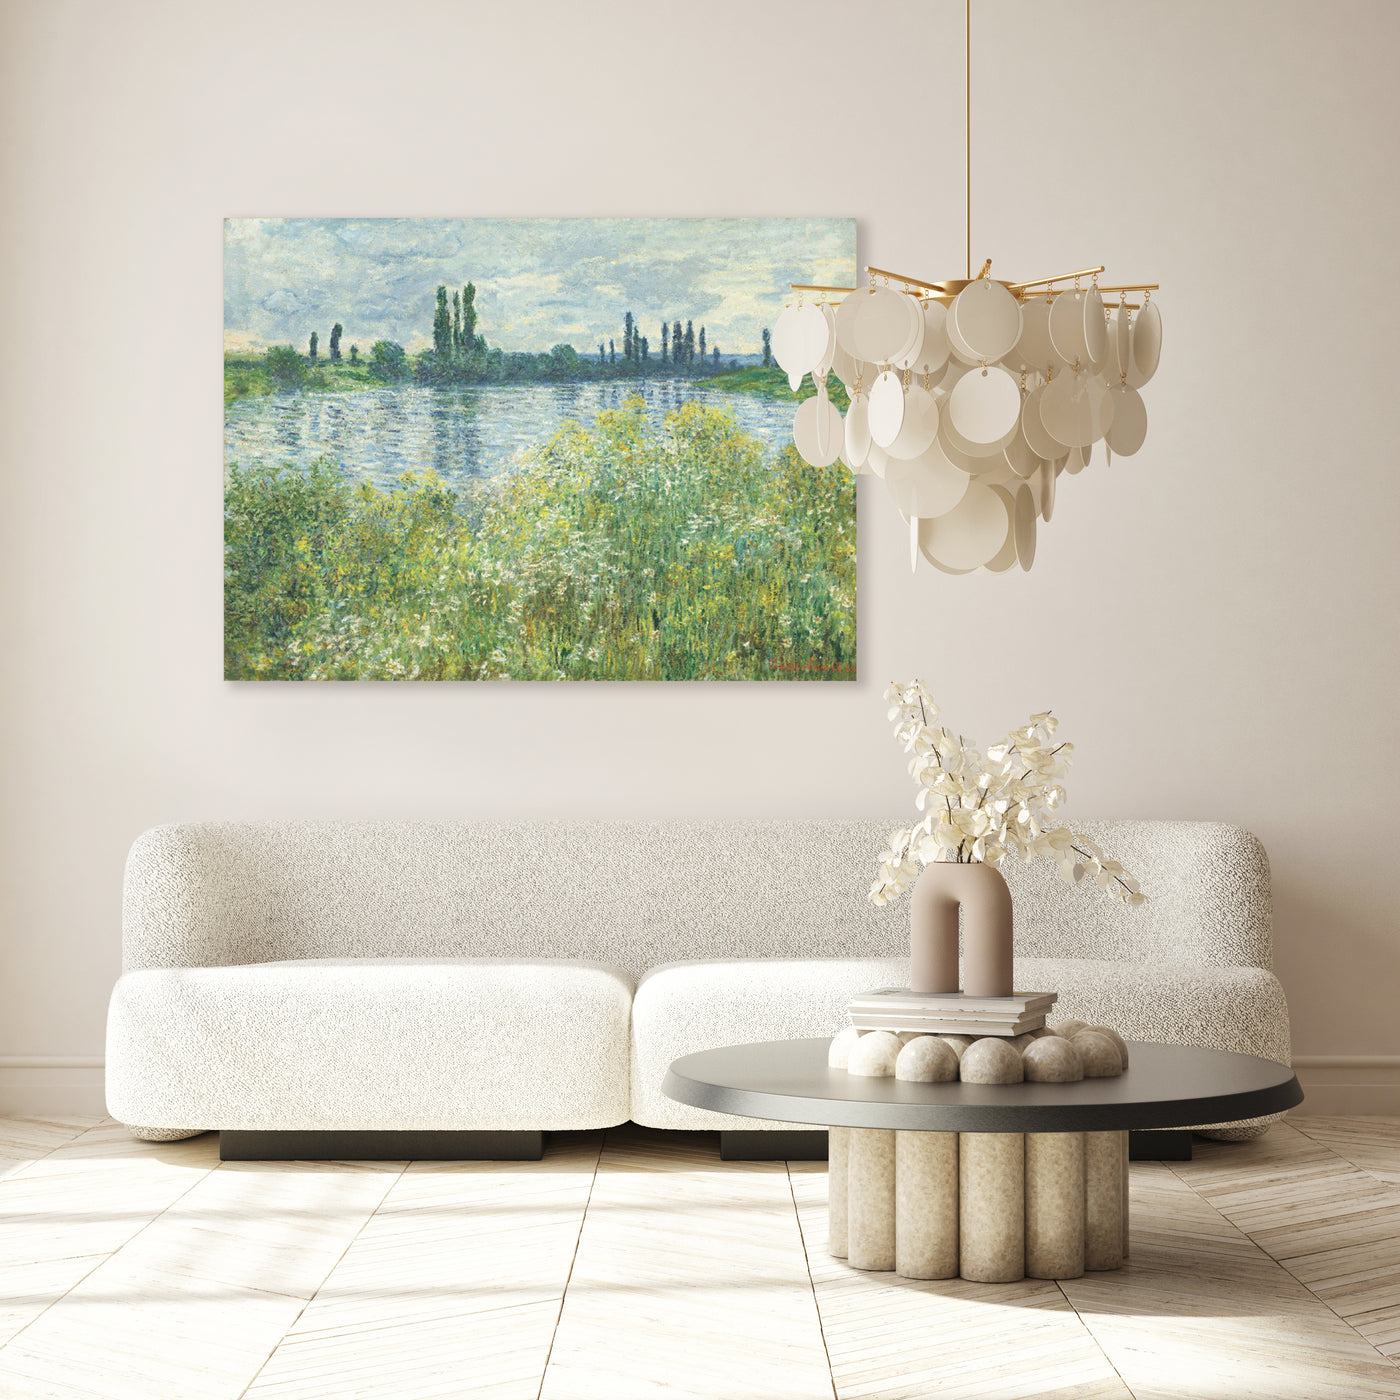 Oevers van de Seine - Claude Monet